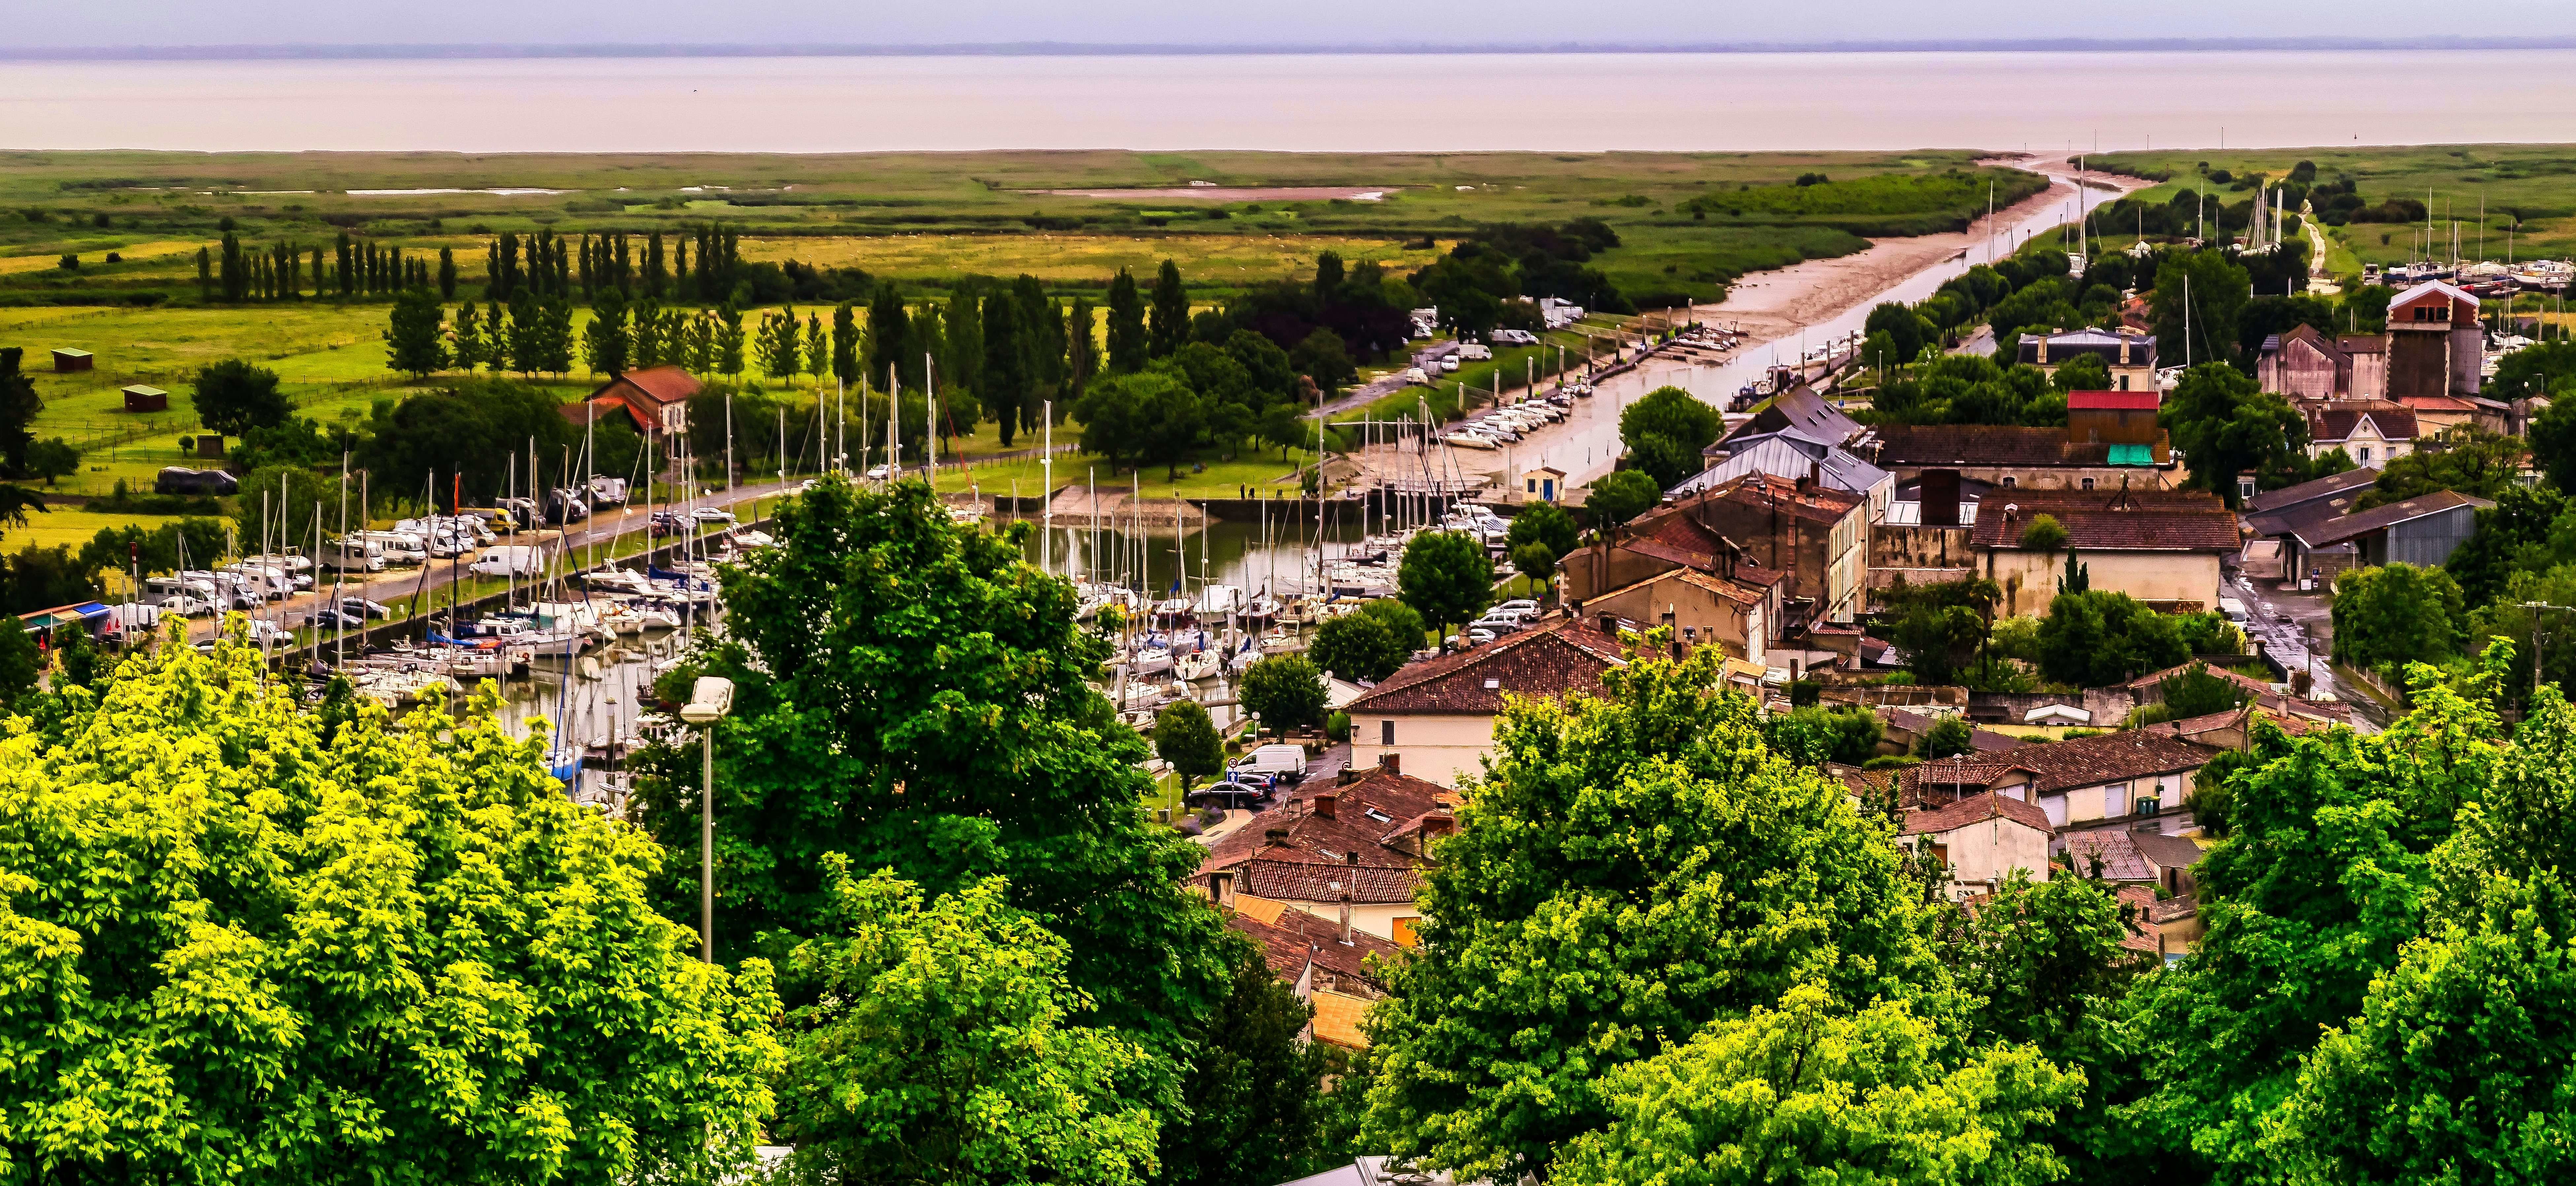 Le joli petit port de Mortagne-sur-Gironde